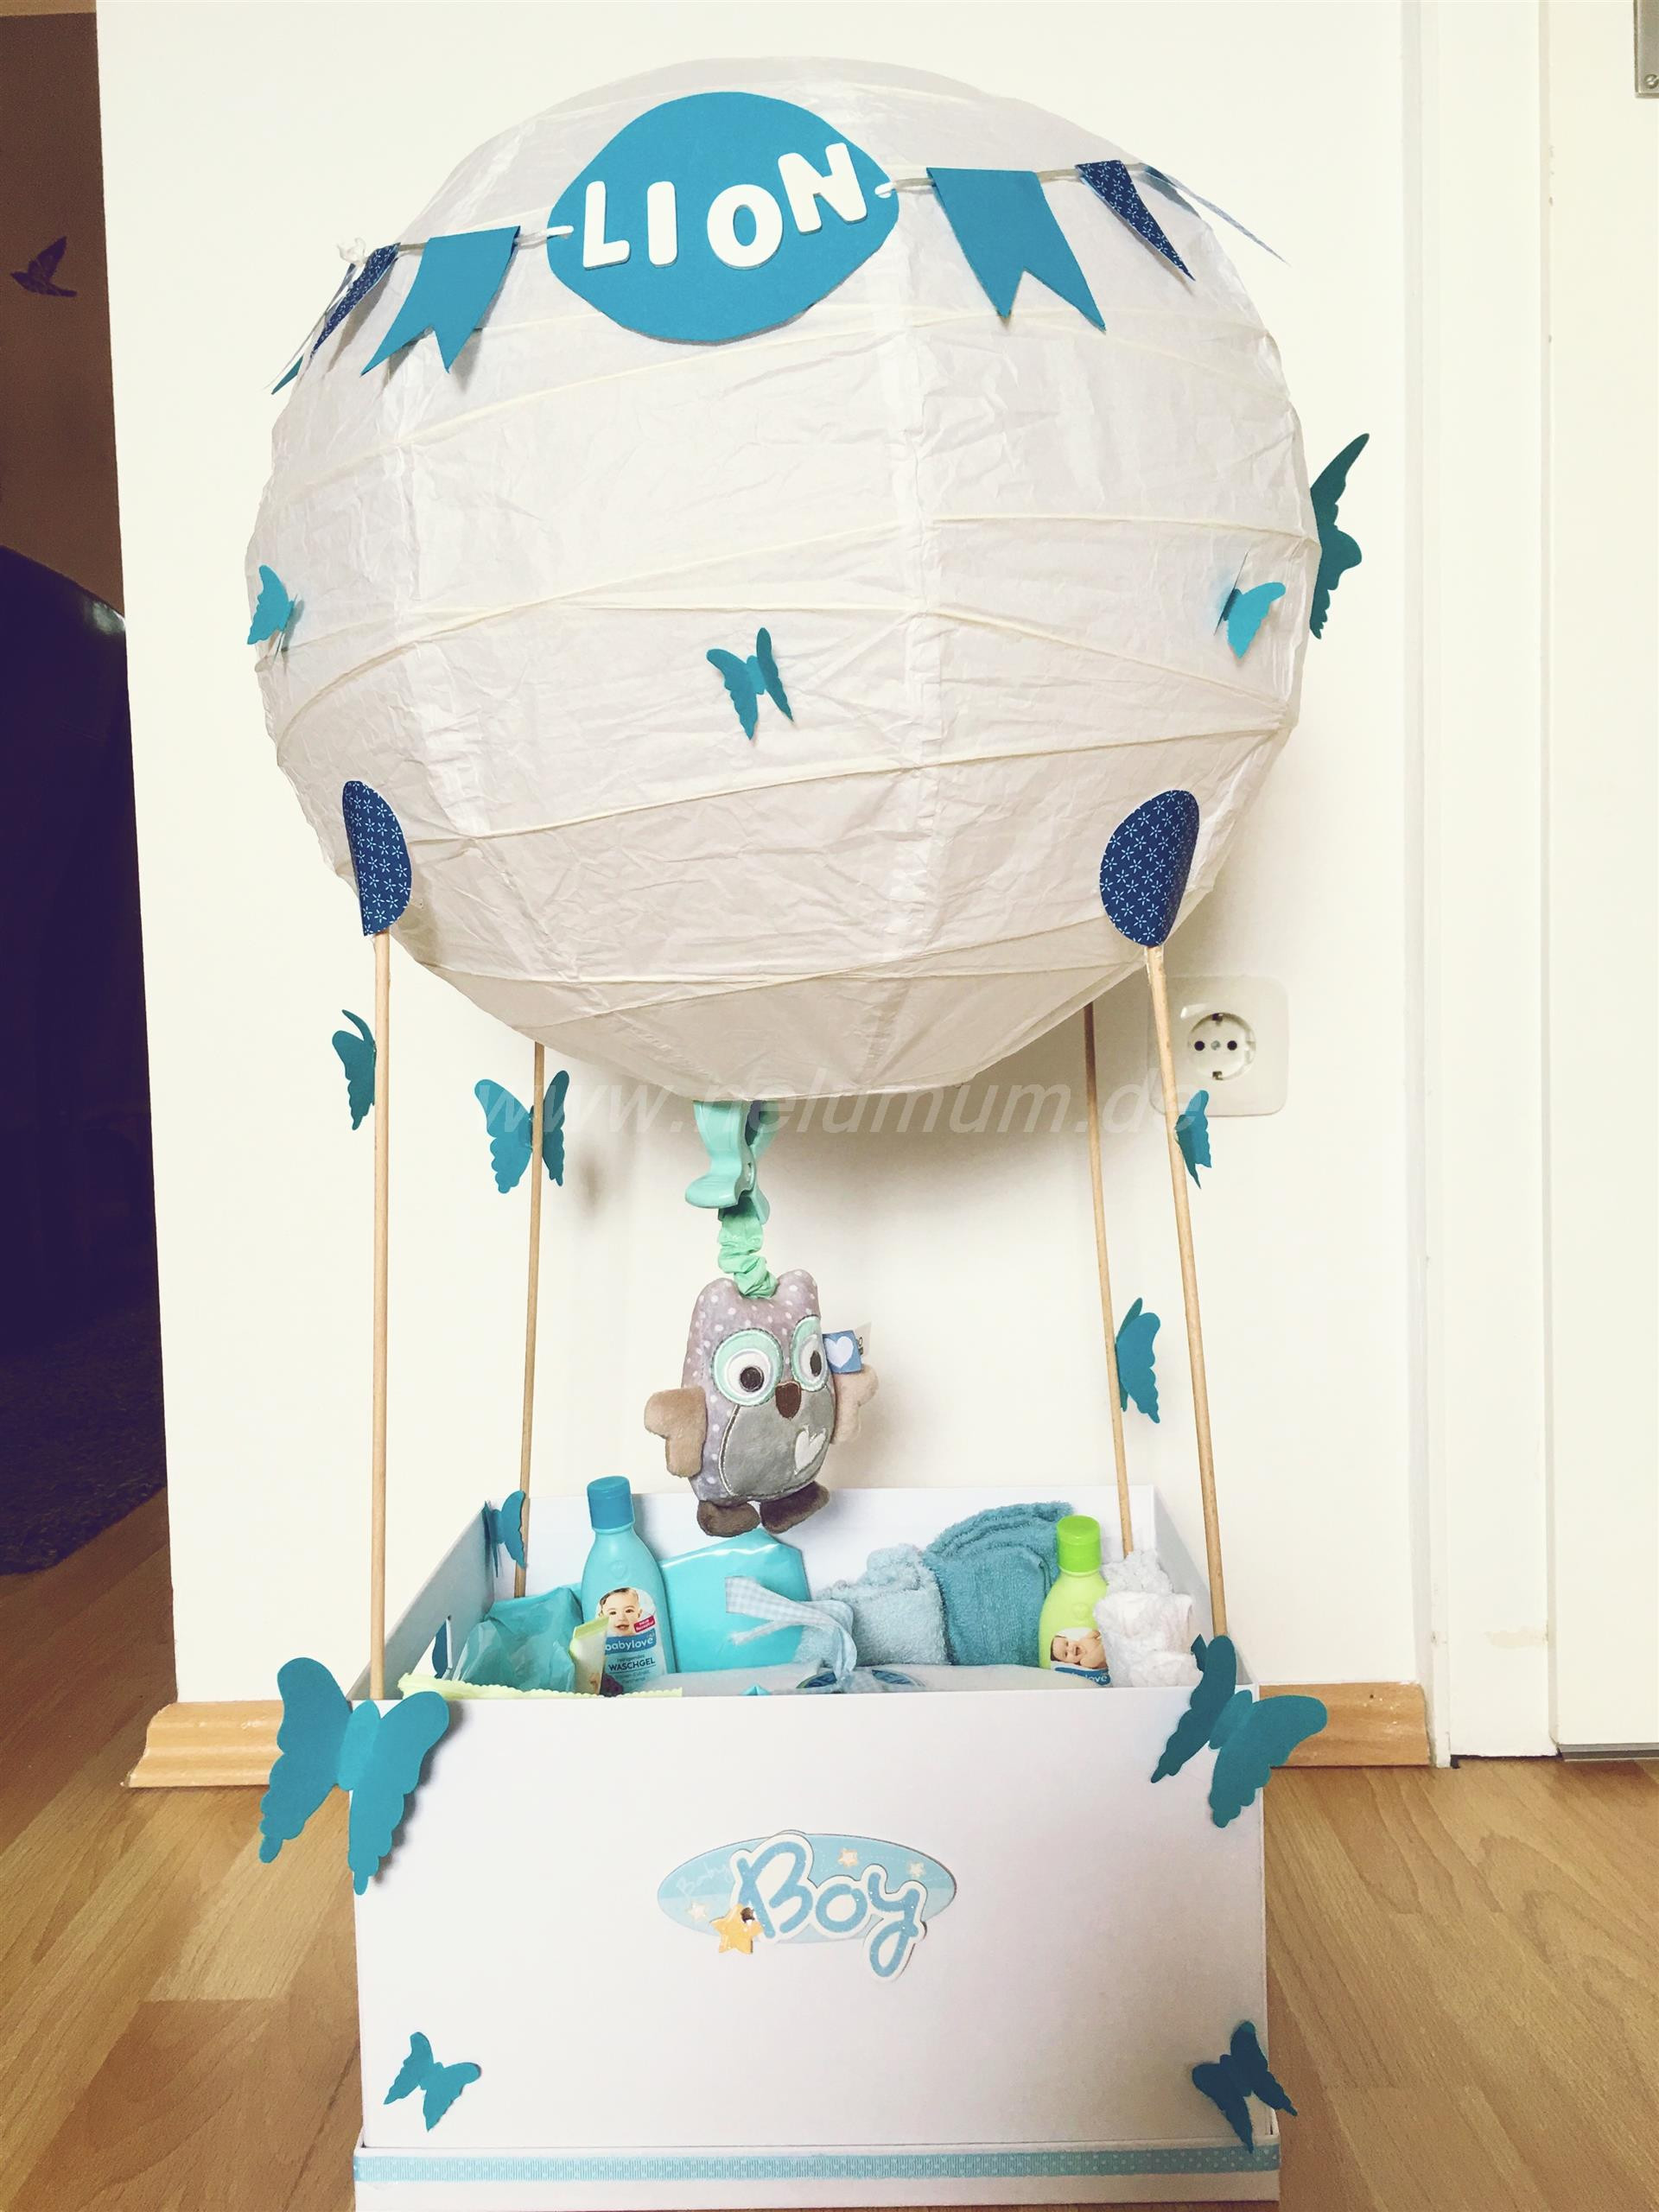 Selbstgemachte Geschenke Zur Geburt
 Heißluftballon zur Geburt NeLuMum